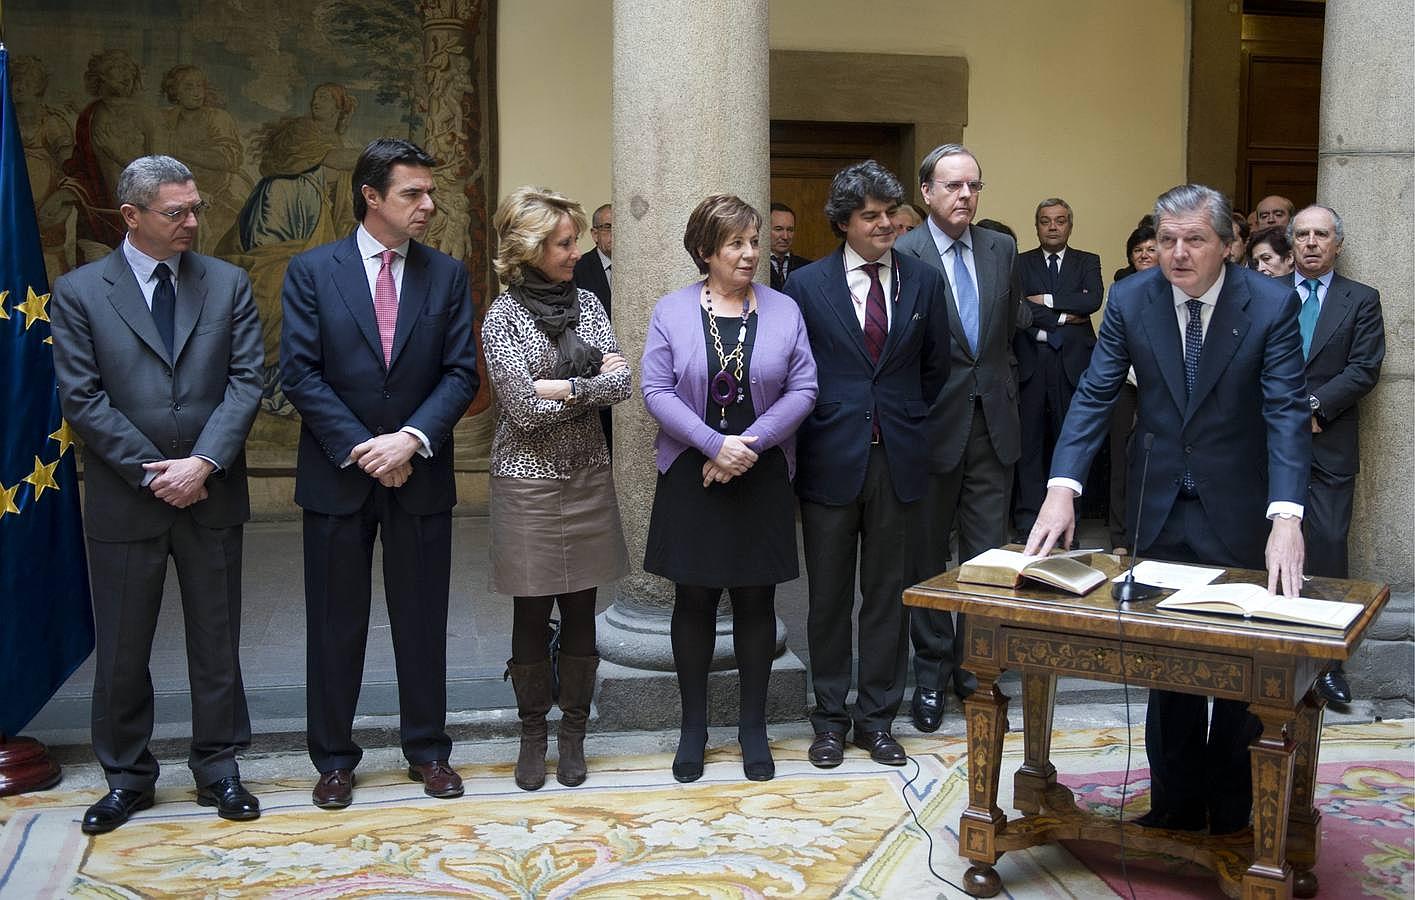 El secretario de Estado para la UE es desde 1022 Íñigo Méndez de Vigo, nombrado en el ministerio de manos del ministro de asuntos exteriores José Manuel García-Margallo